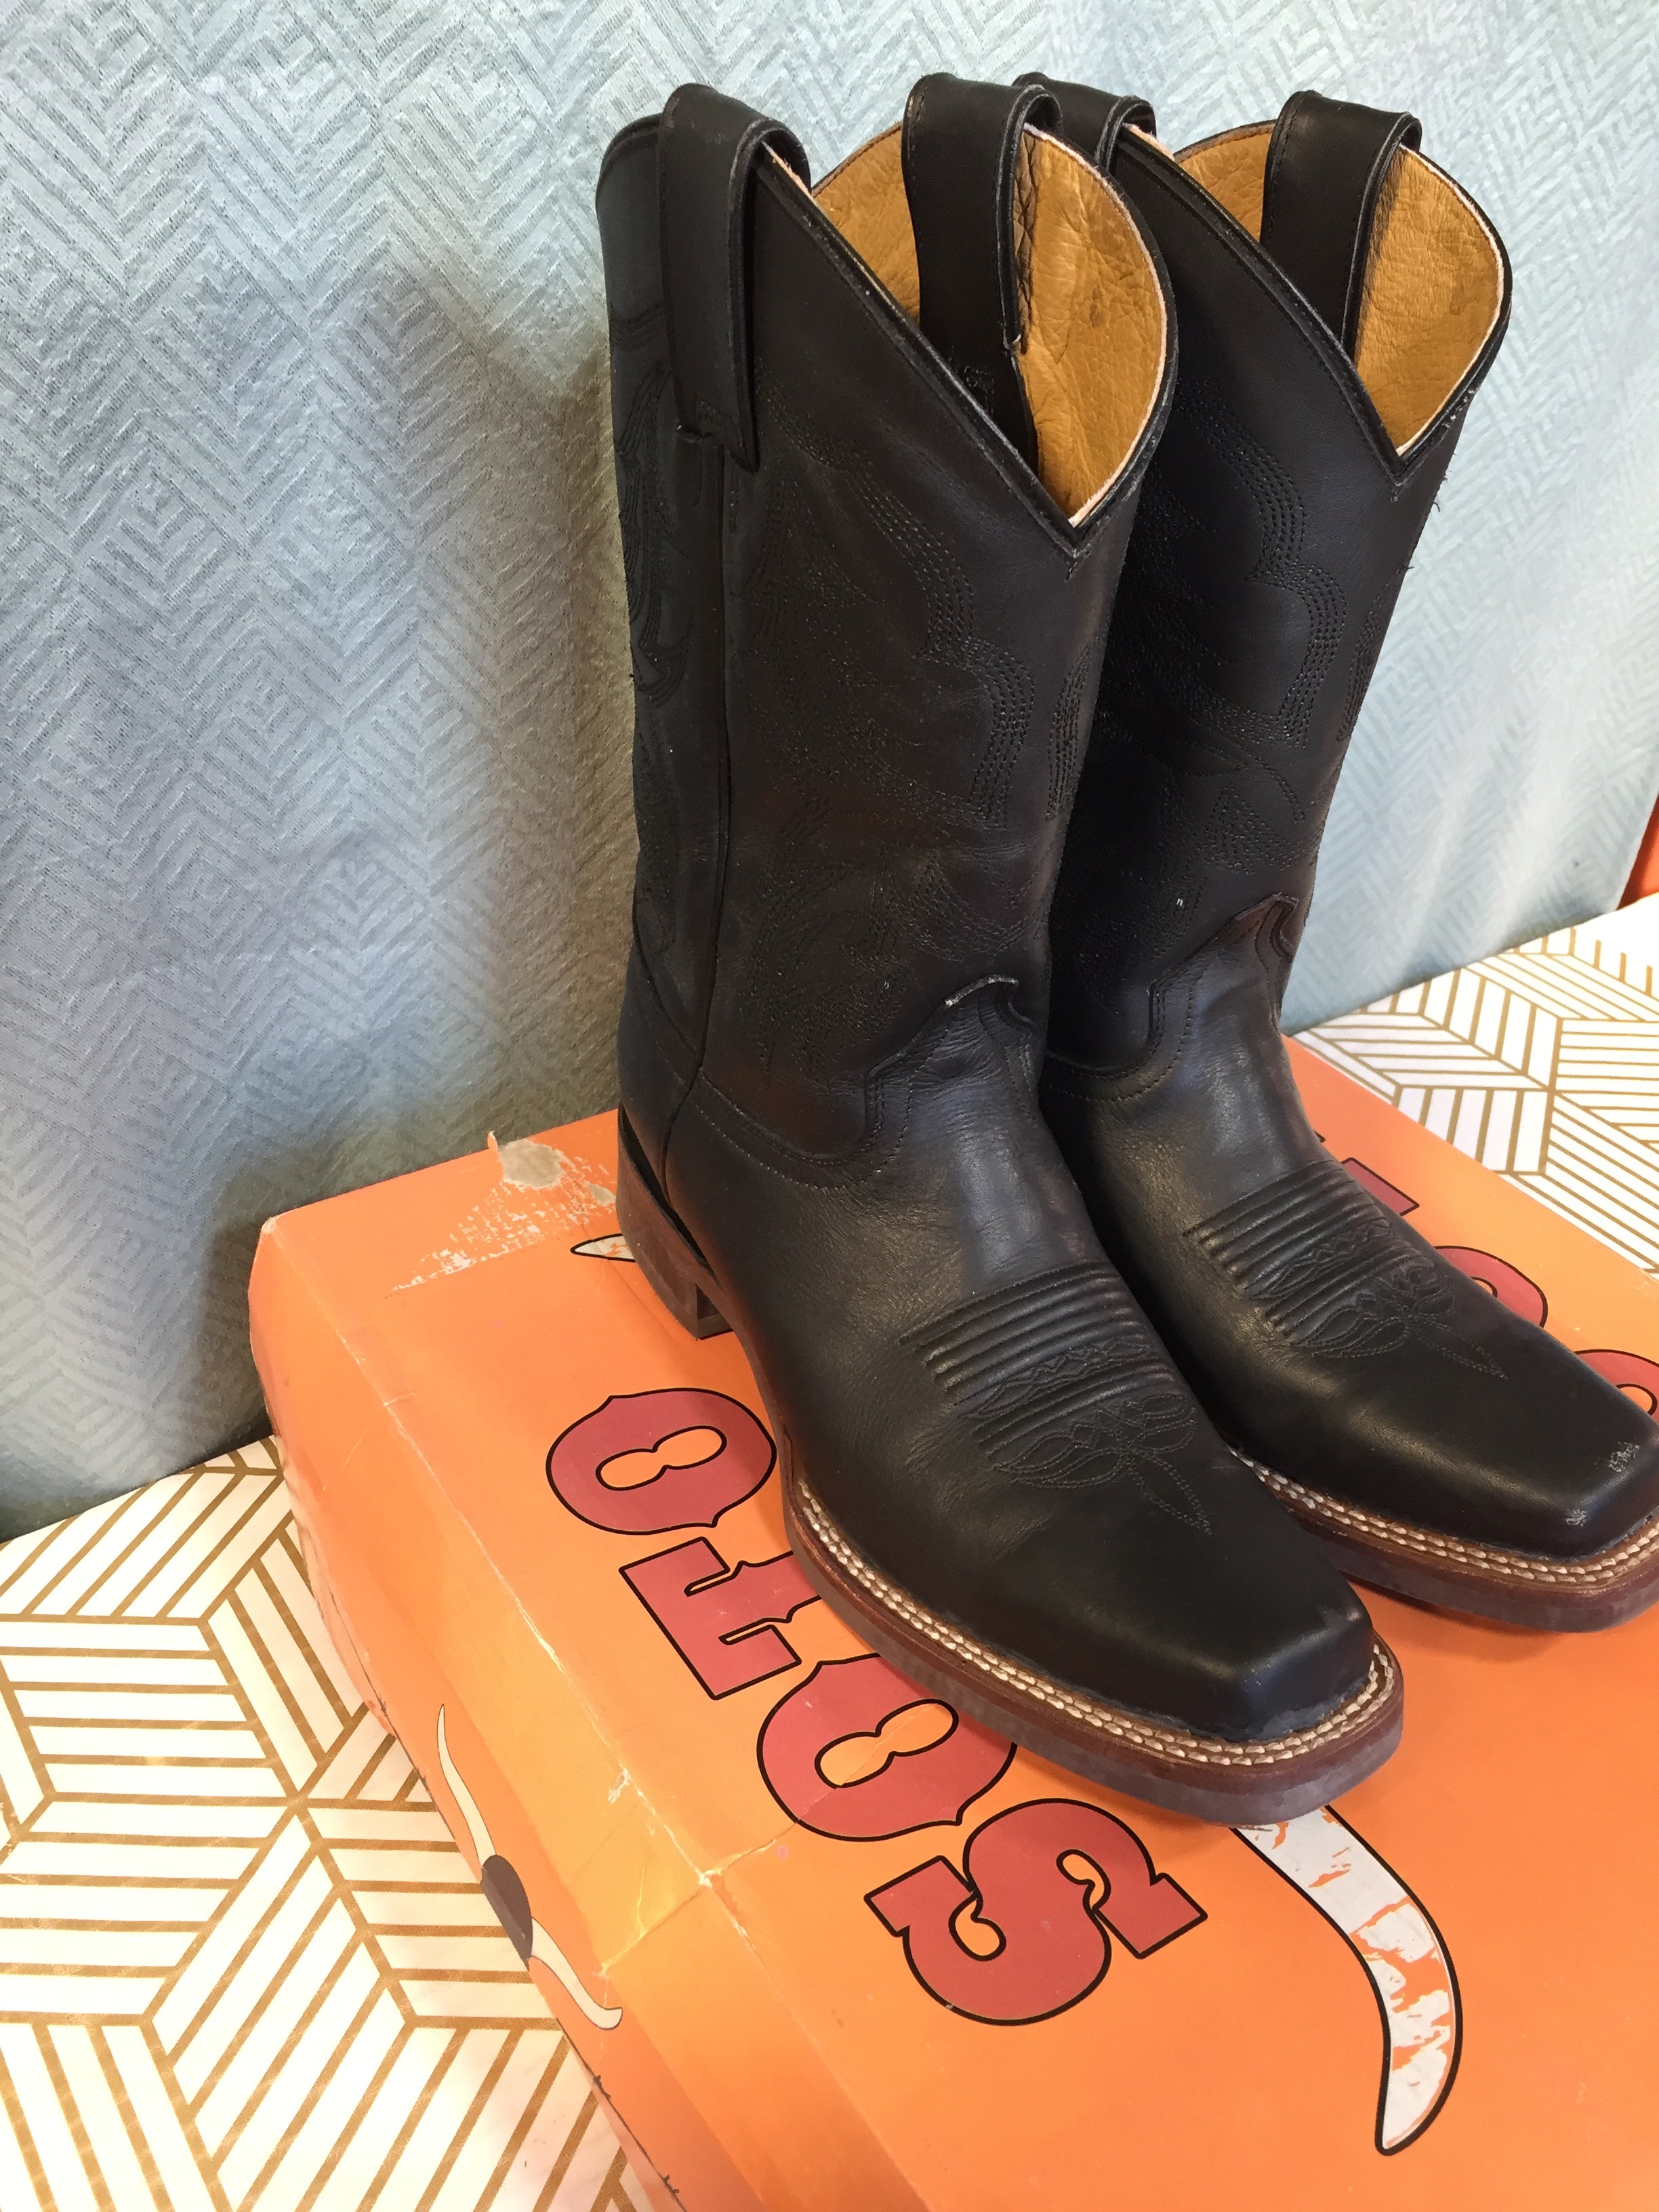 Soto Boots Men's Square Toe Cowboy Boots Black H4002 - US 7.5 (7776188399854)